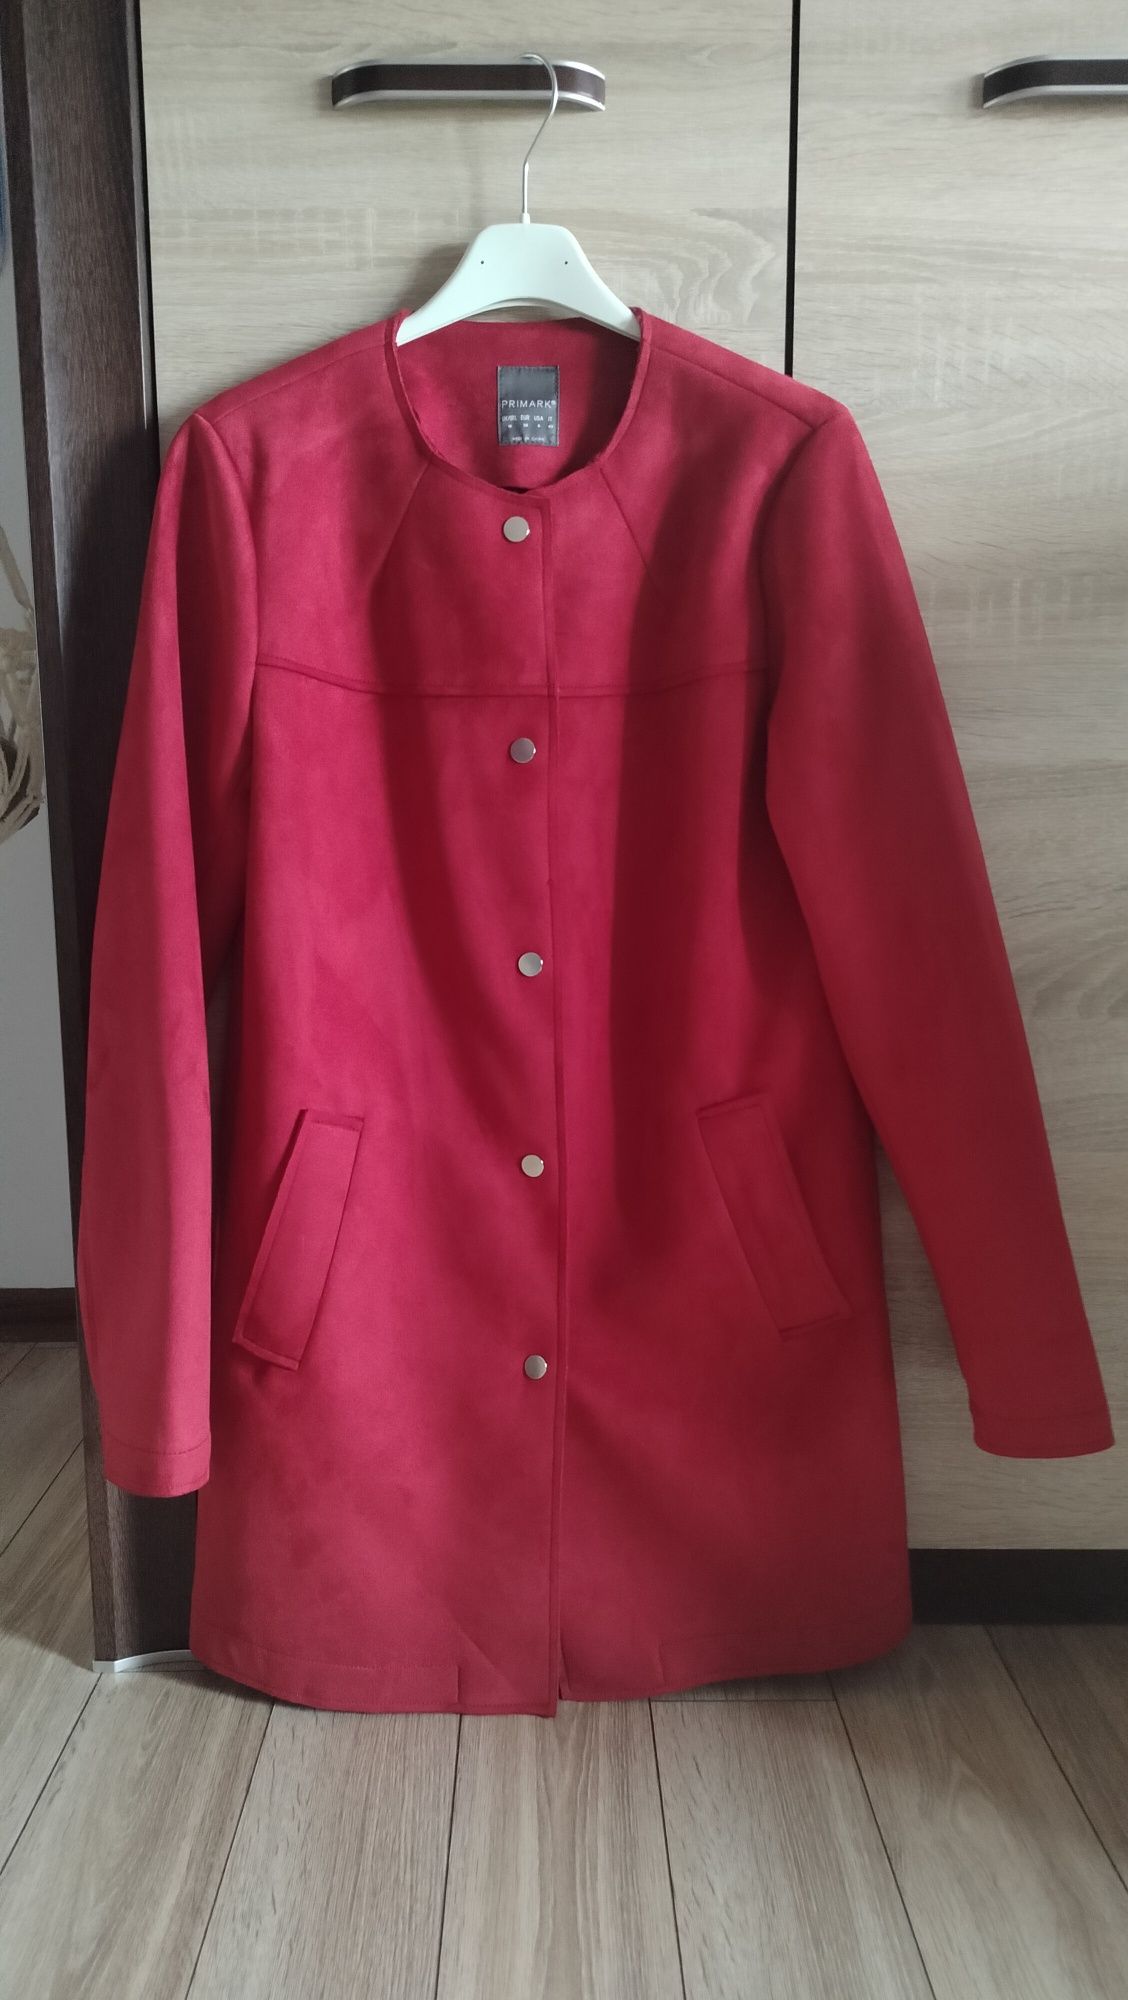 Czerwony burgrundowy płaszcz długi zamszowy cienki zapinany na zatrzas